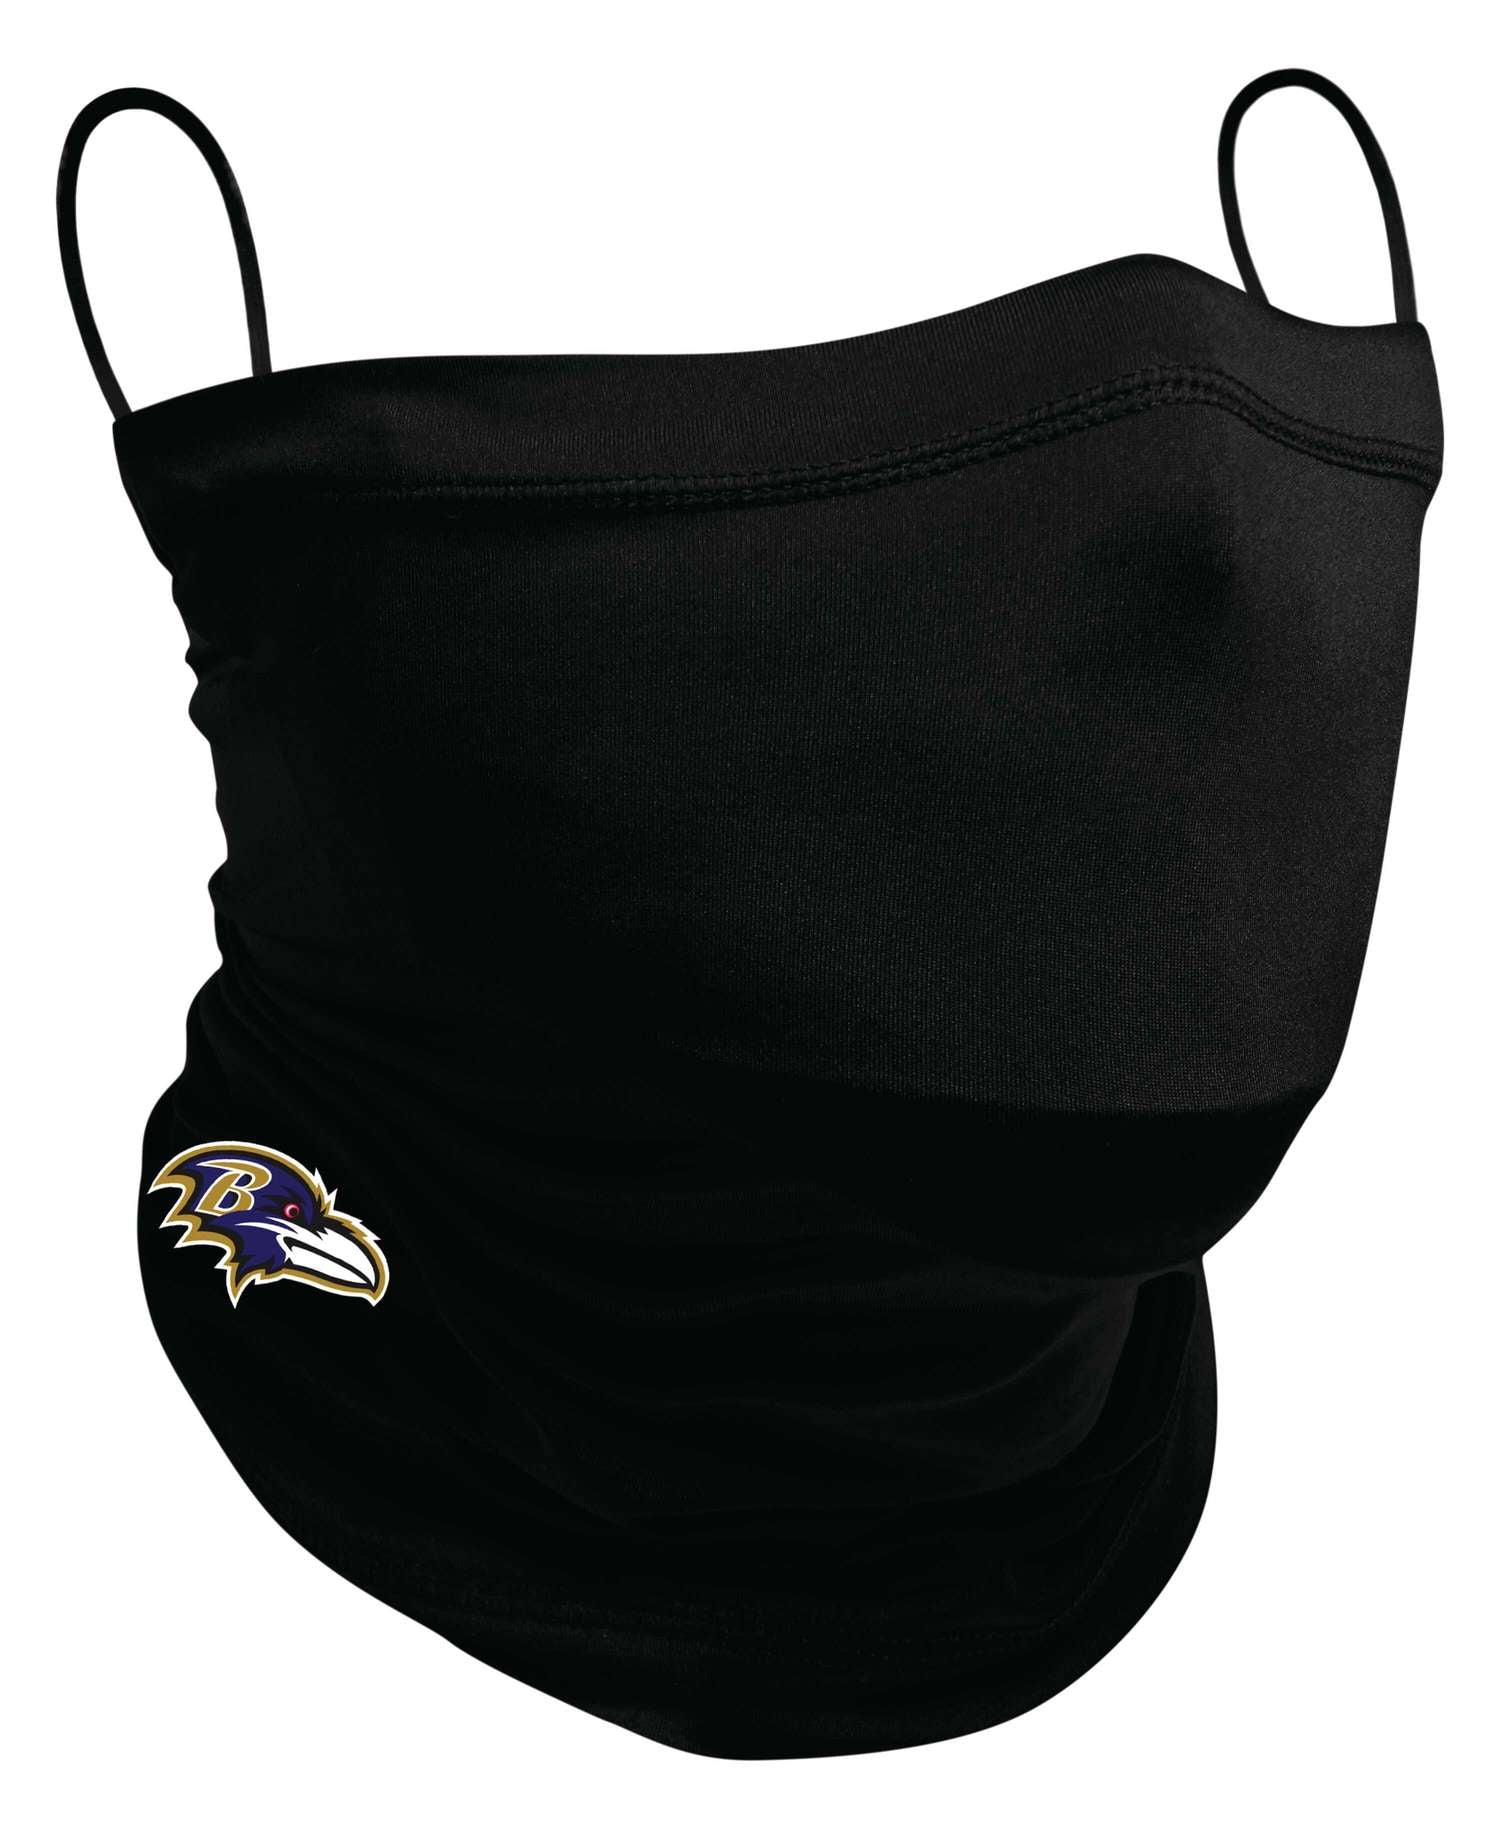 New Era - NFL Baltimore Ravens Neck Gaiter Halstuch Gesichtsmaske - Schwarz